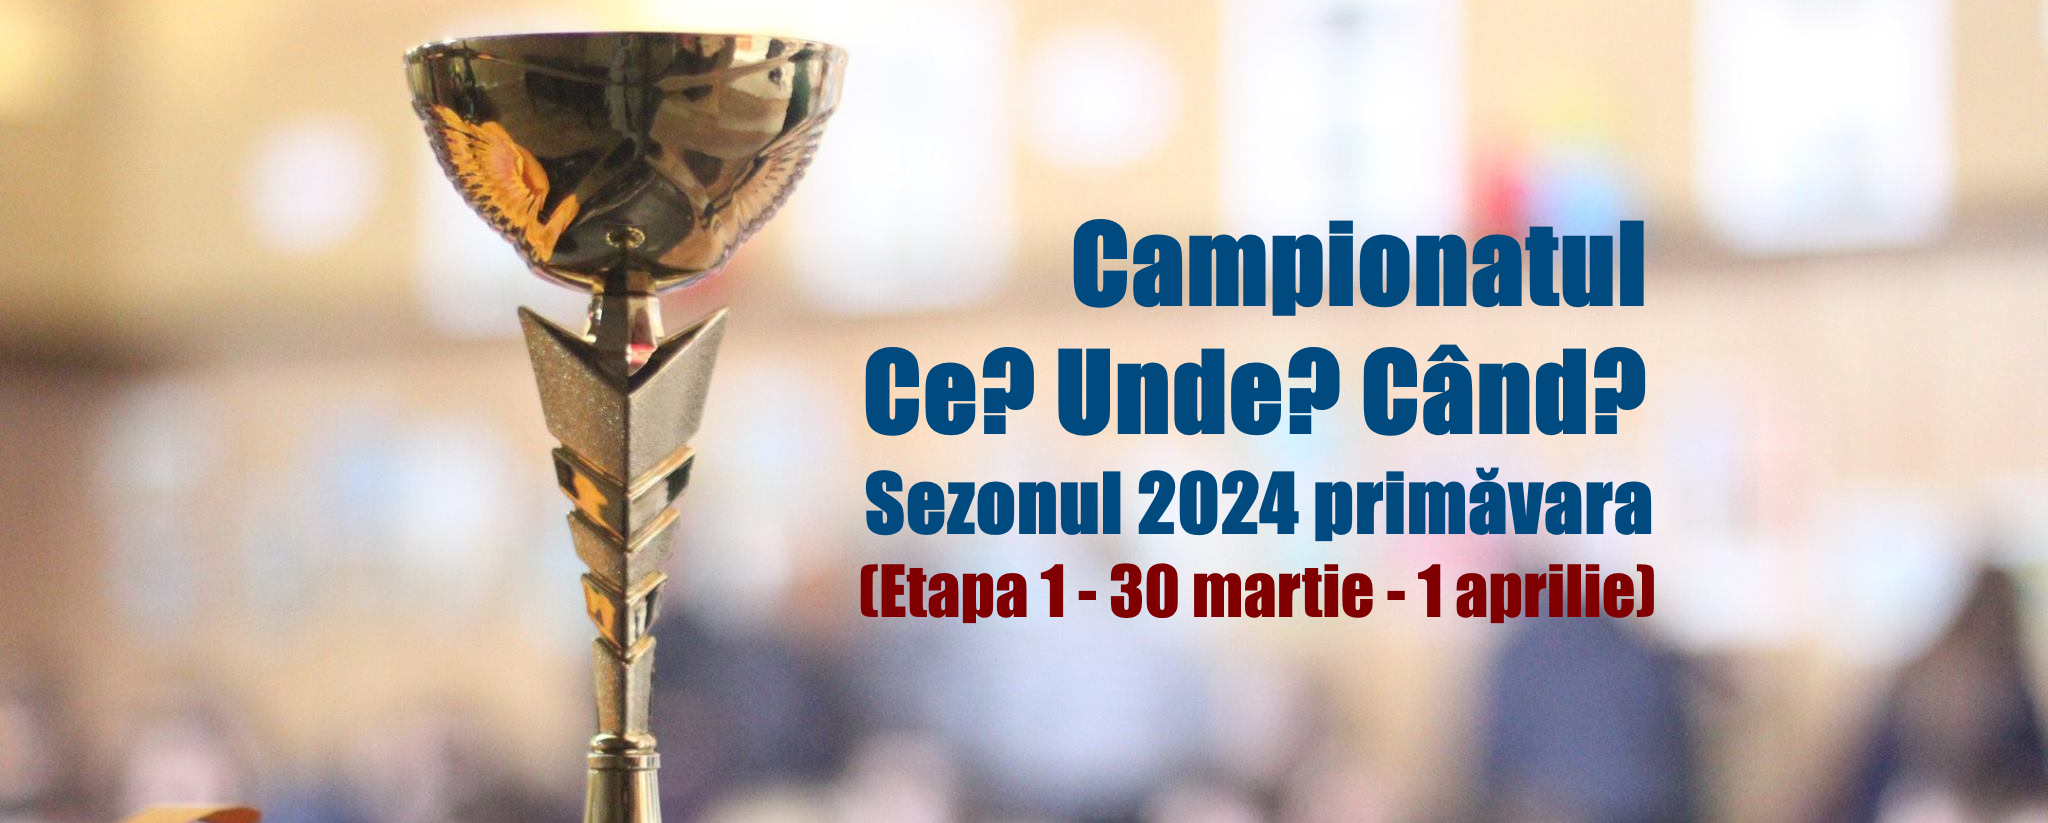 Campionatul CUC 2024P etapa 1